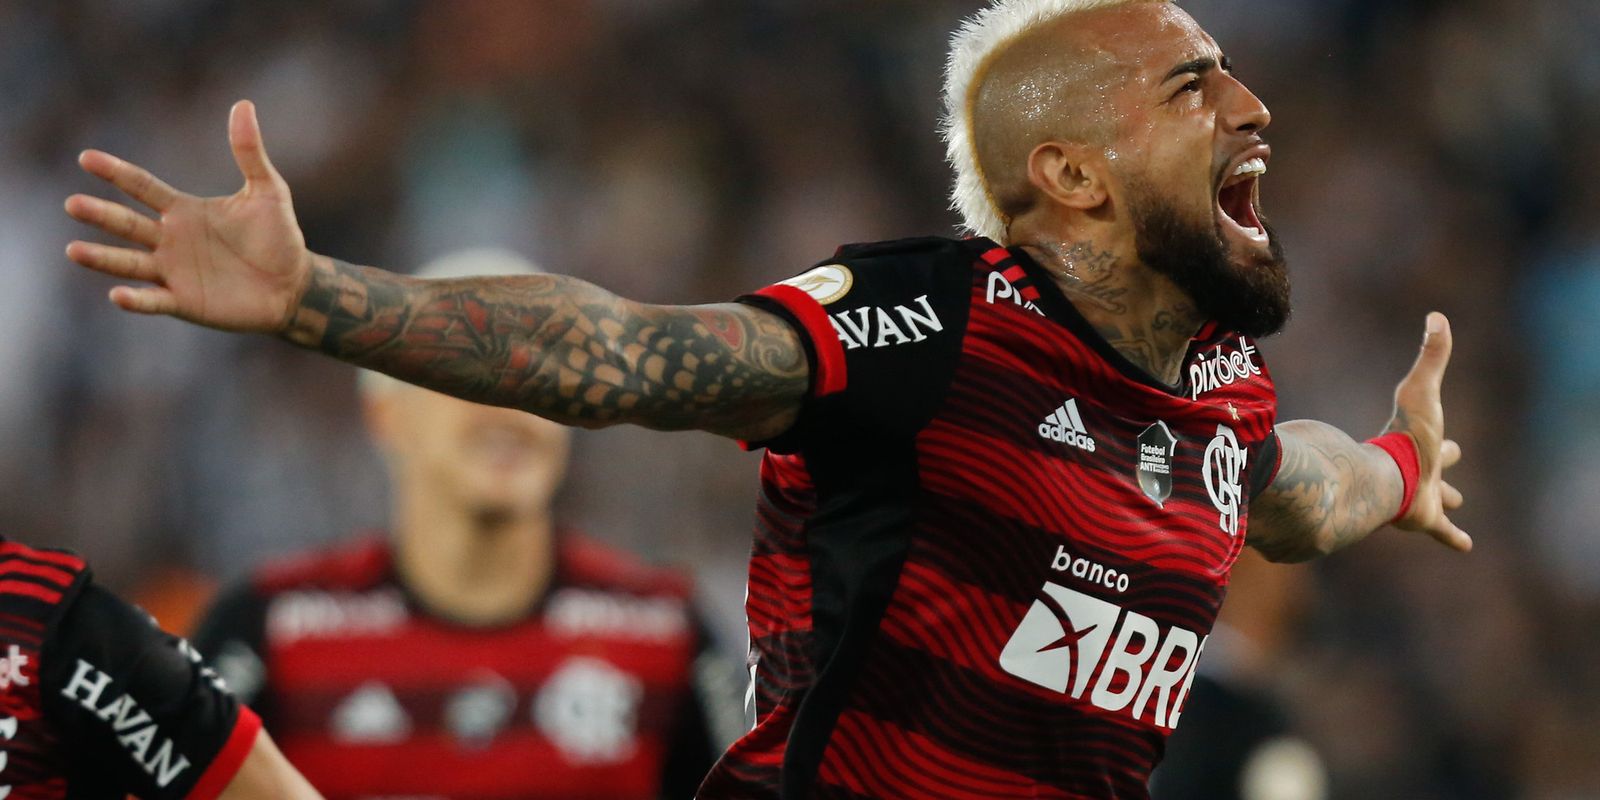 Botafogo vence Flamengo e assume liderança do Brasileirão